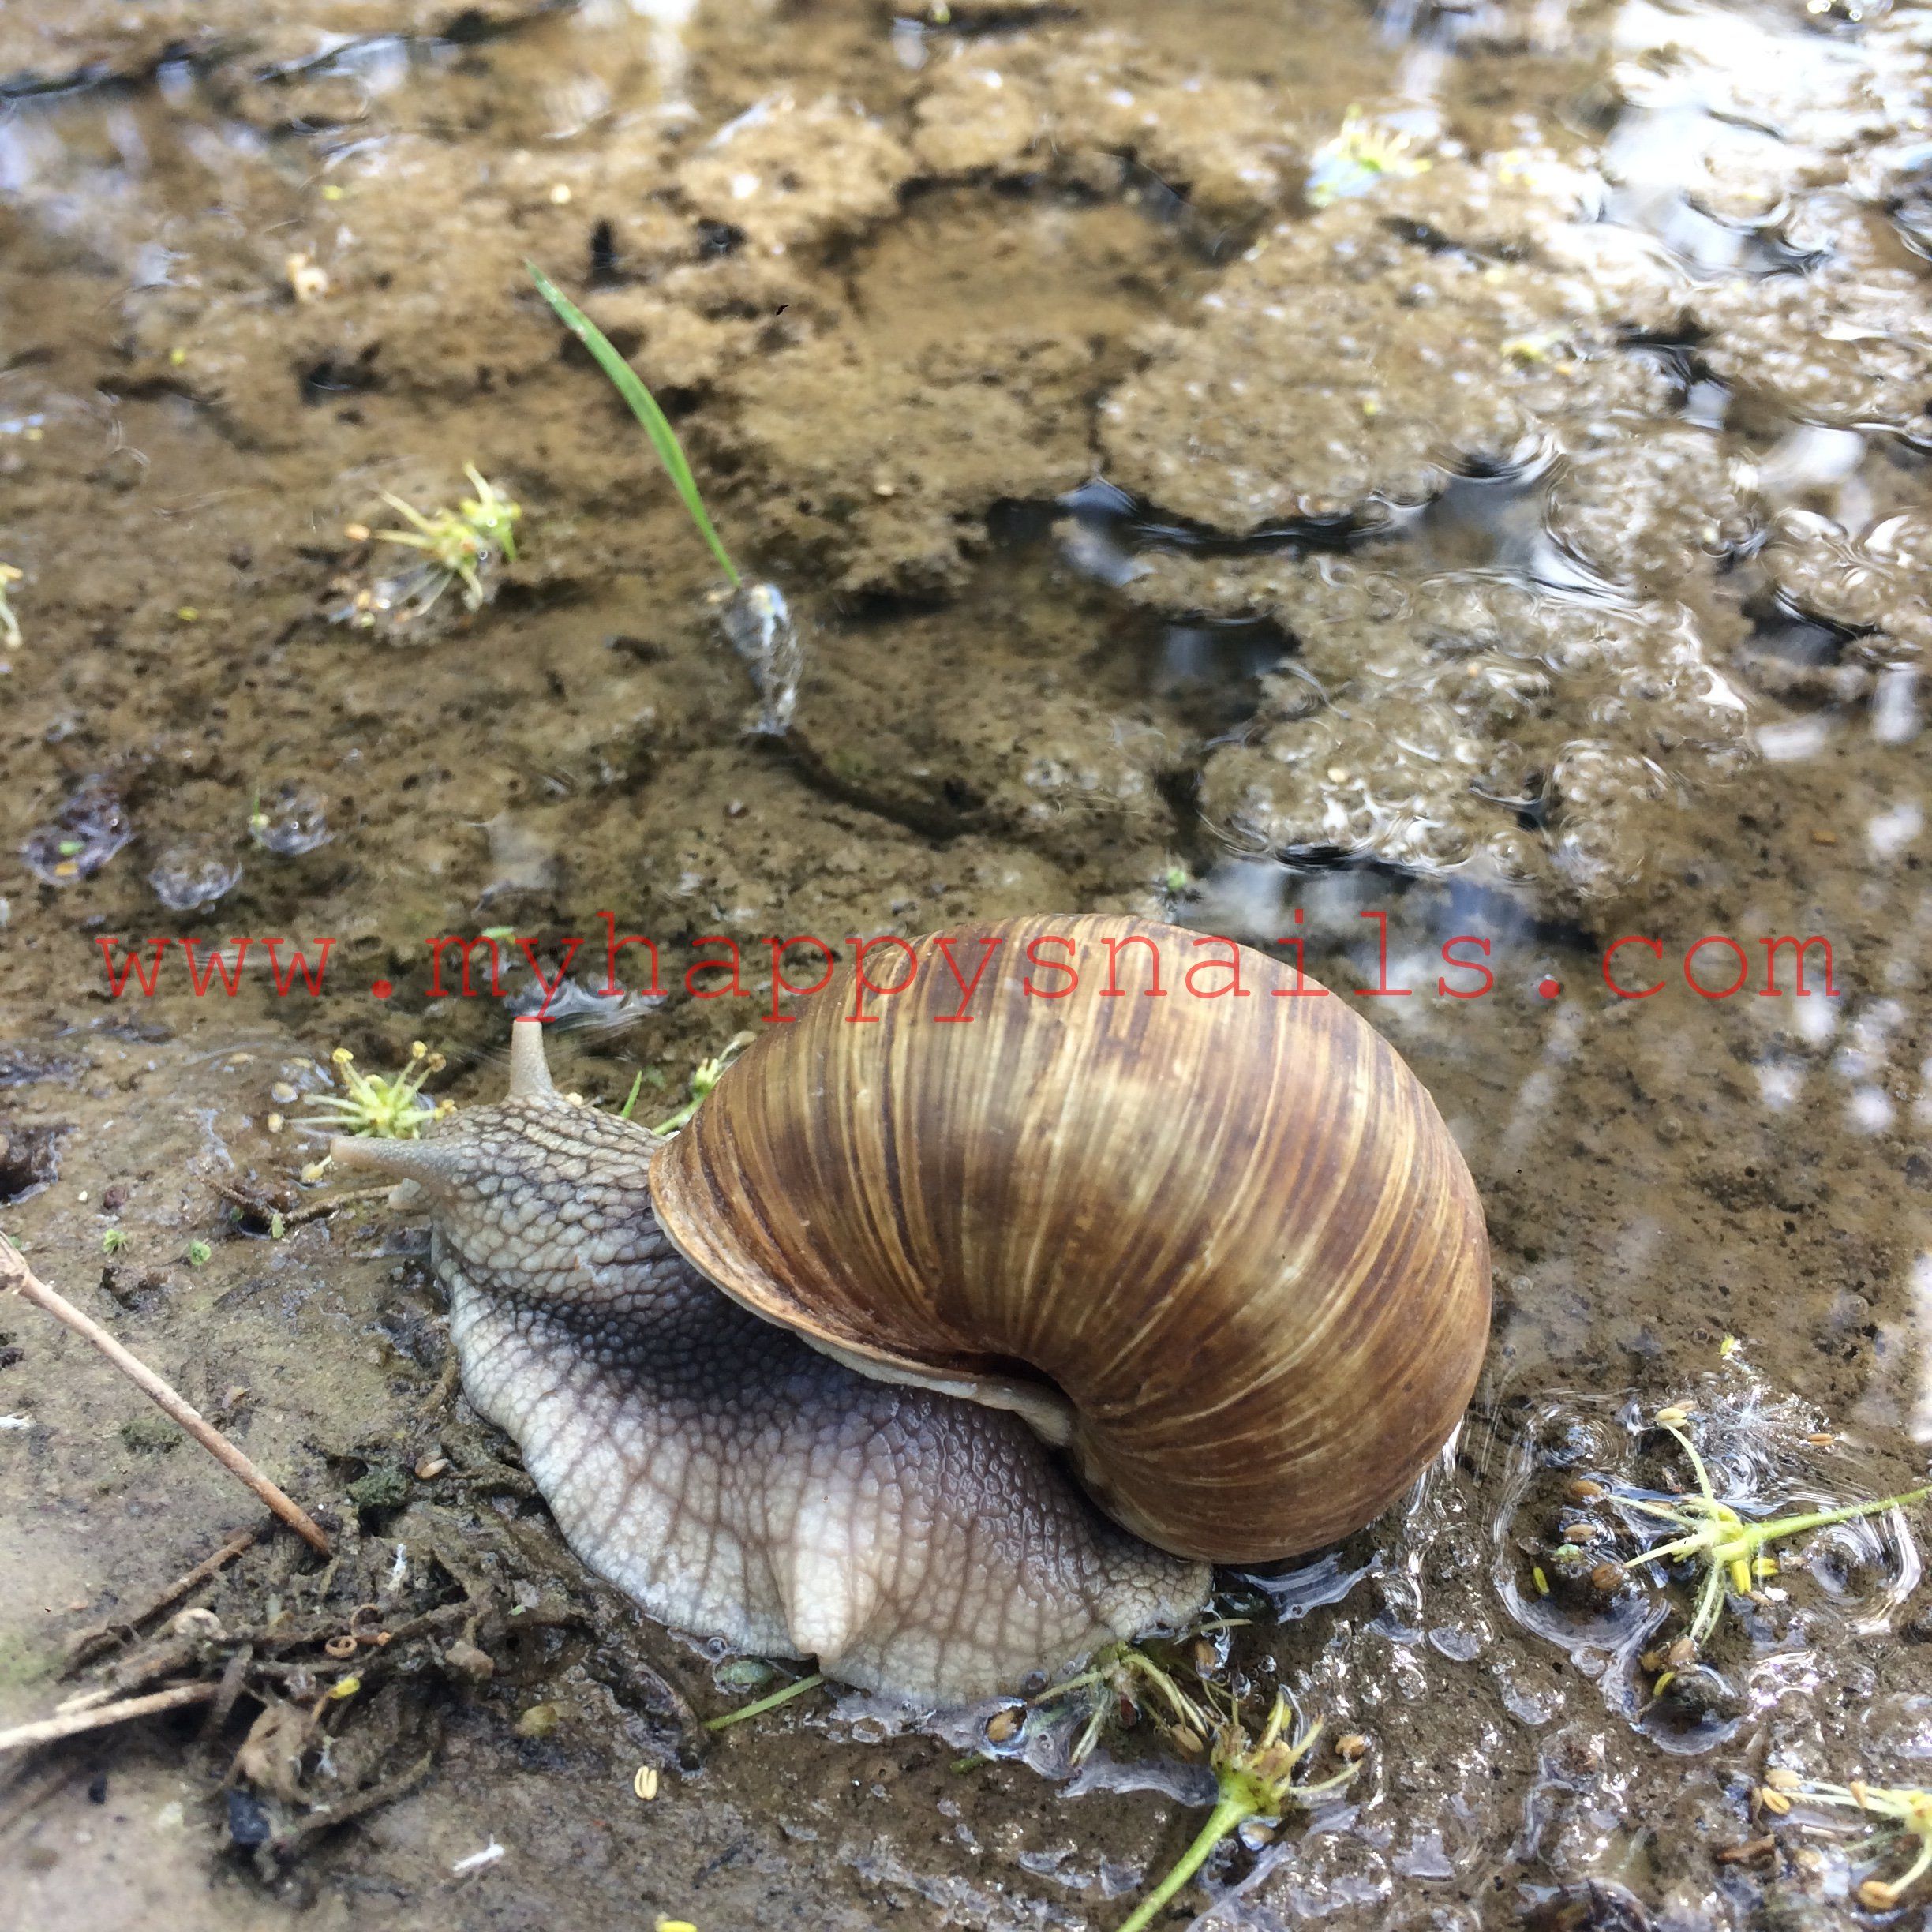 Big Roman snail - Helix Pomatia | Snails | Pinterest | Roman snail